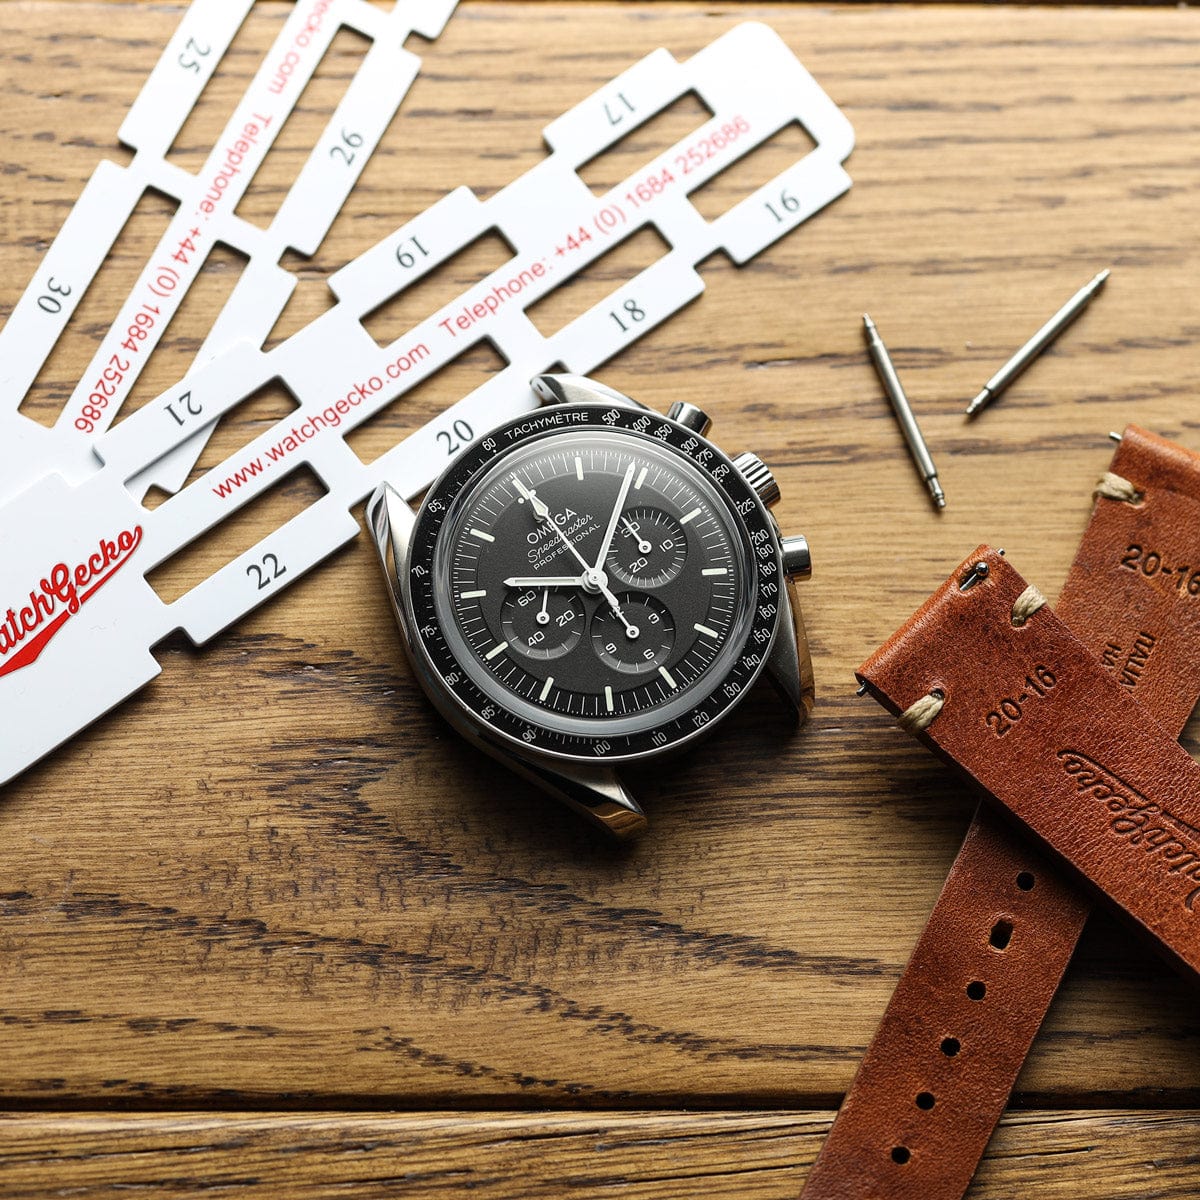 WatchGecko Premium Leather Watch Case Gift Set